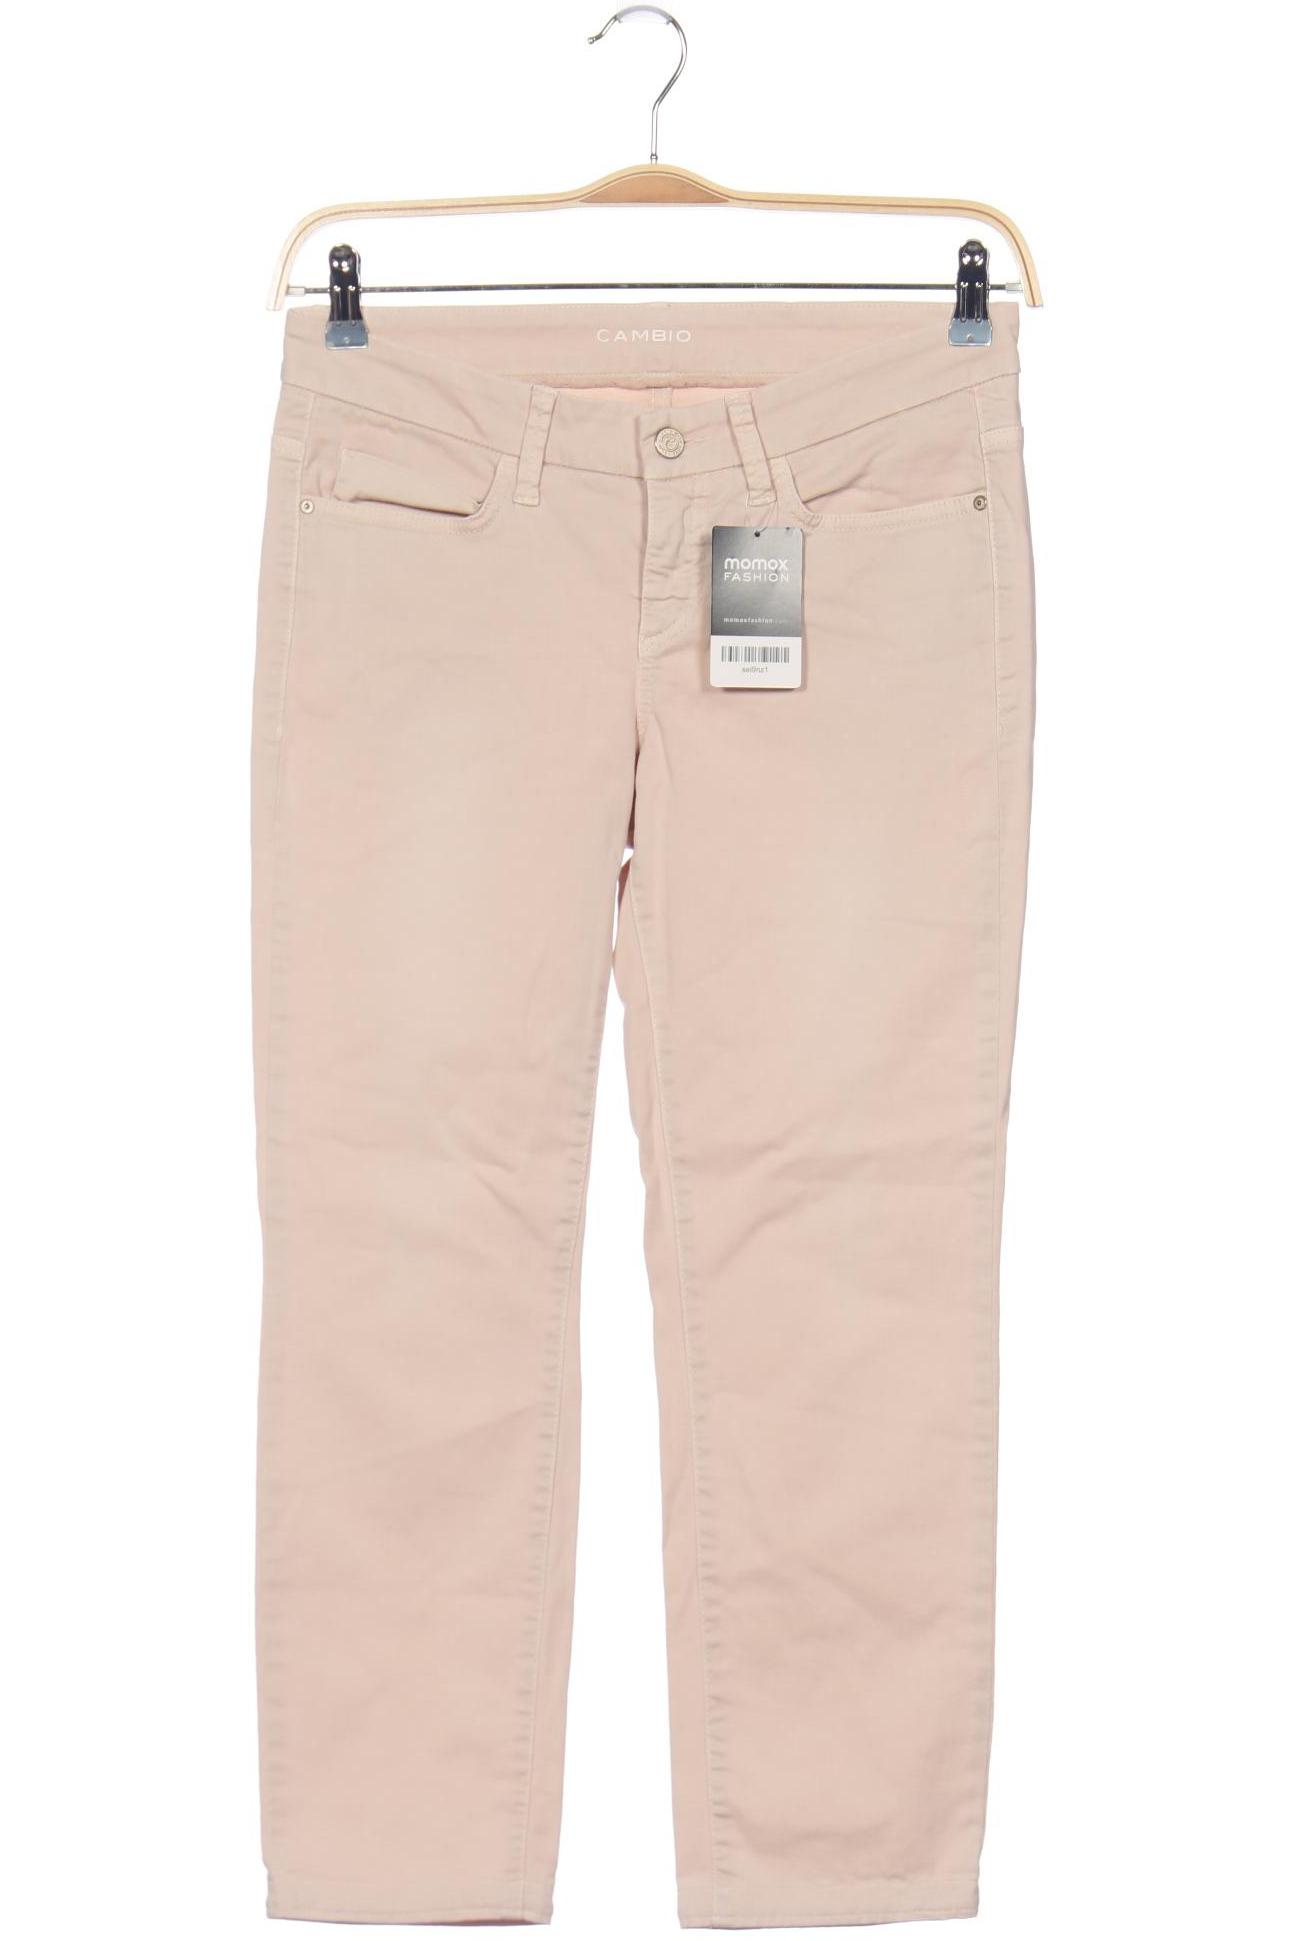 Cambio Damen Jeans, pink, Gr. 40 von CAMBIO